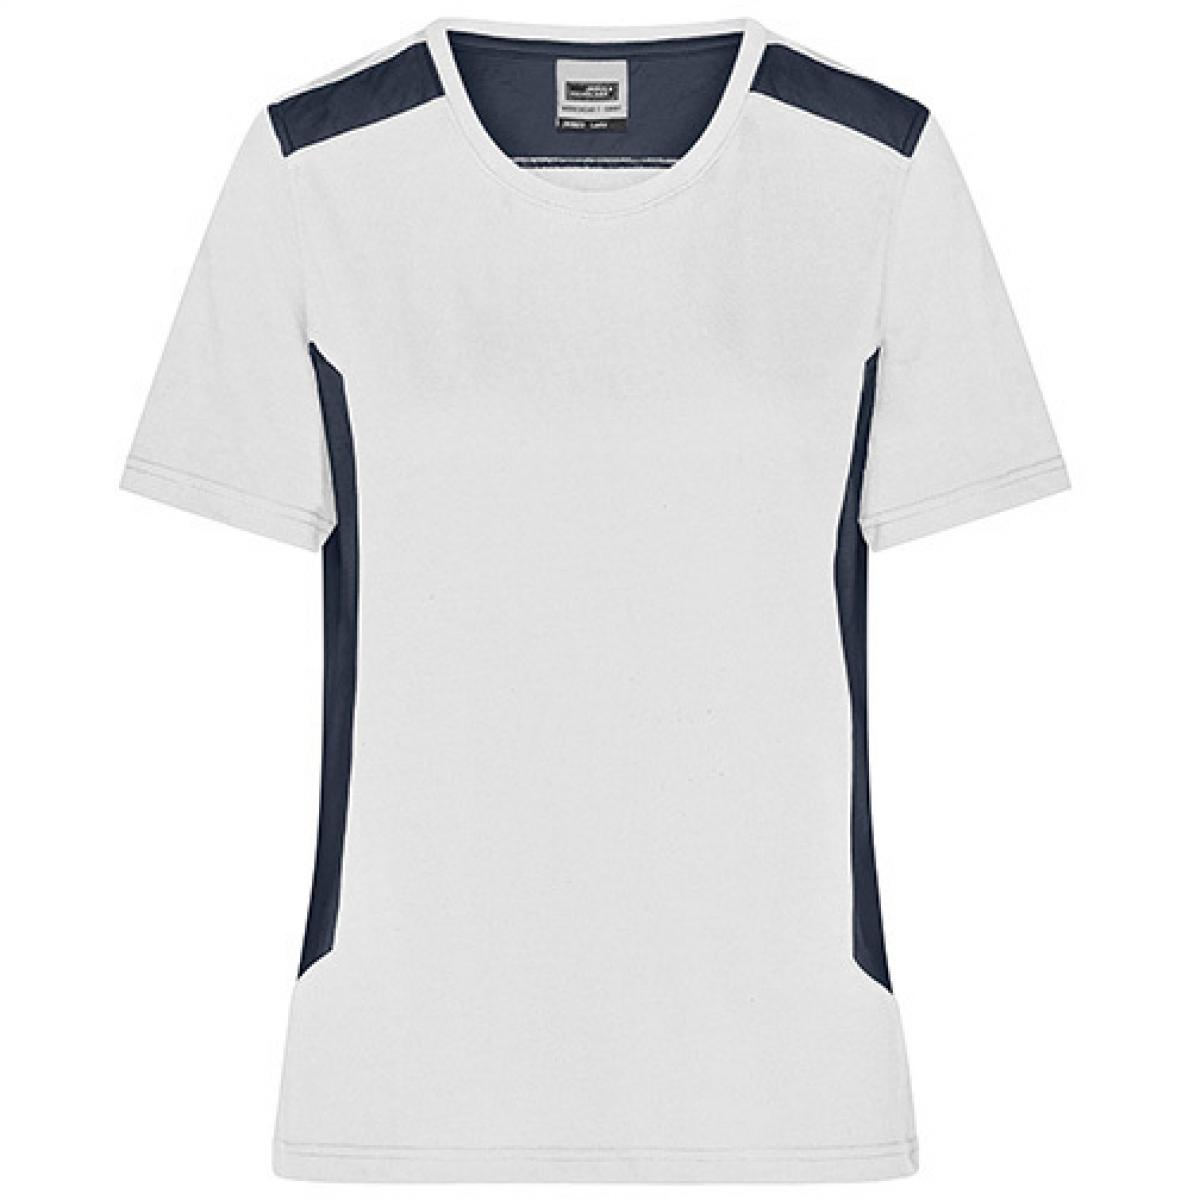 Hersteller: James+Nicholson Herstellernummer: JN1823 Artikelbezeichnung: Damen T, Ladies‘ Workwear T-Shirt -STRONG- Waschbar bis 60 ° Farbe: White/Carbon